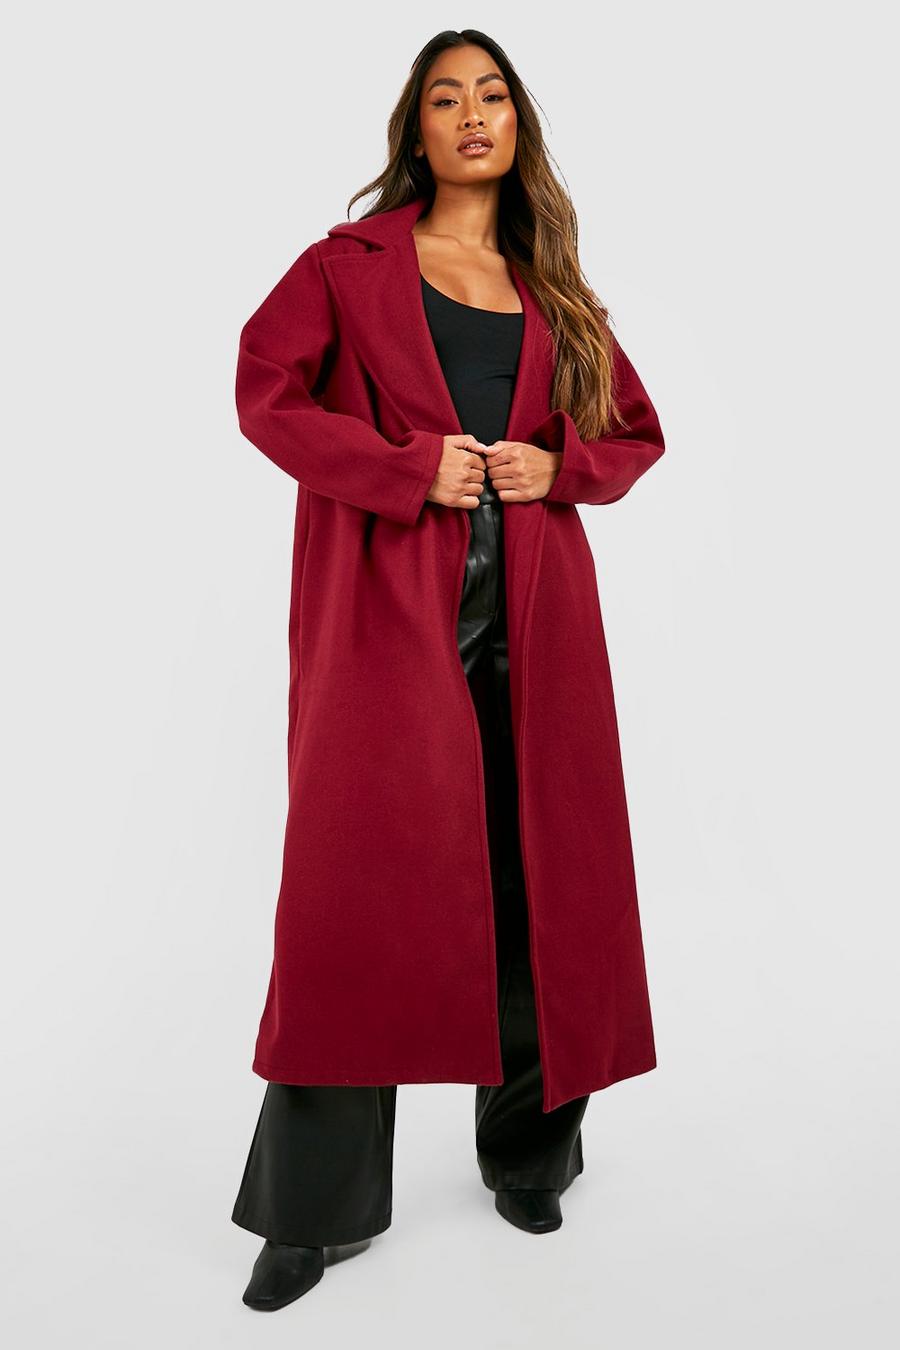 Burgundy red Longline Wool Look Coat